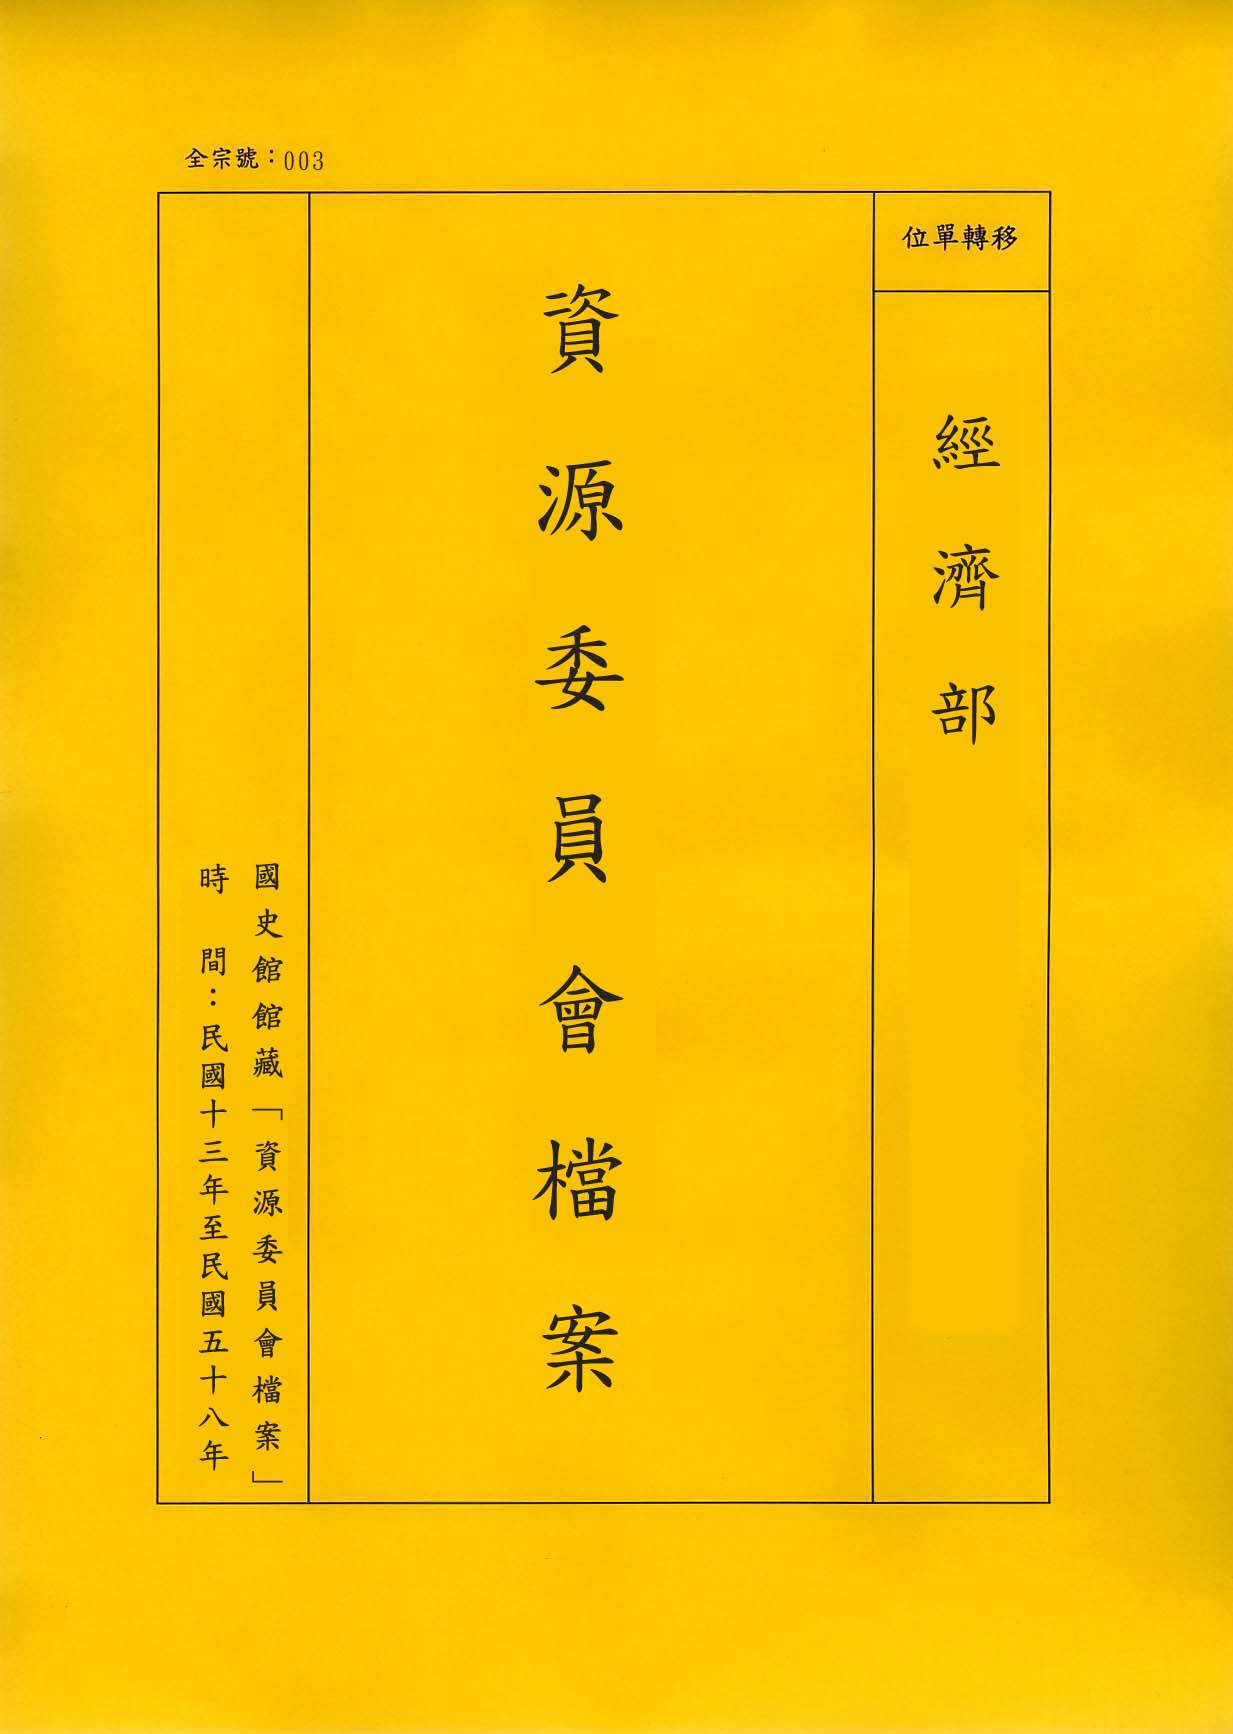 卷名:染織工廠調查表─上海(一)(003-010306-0185)